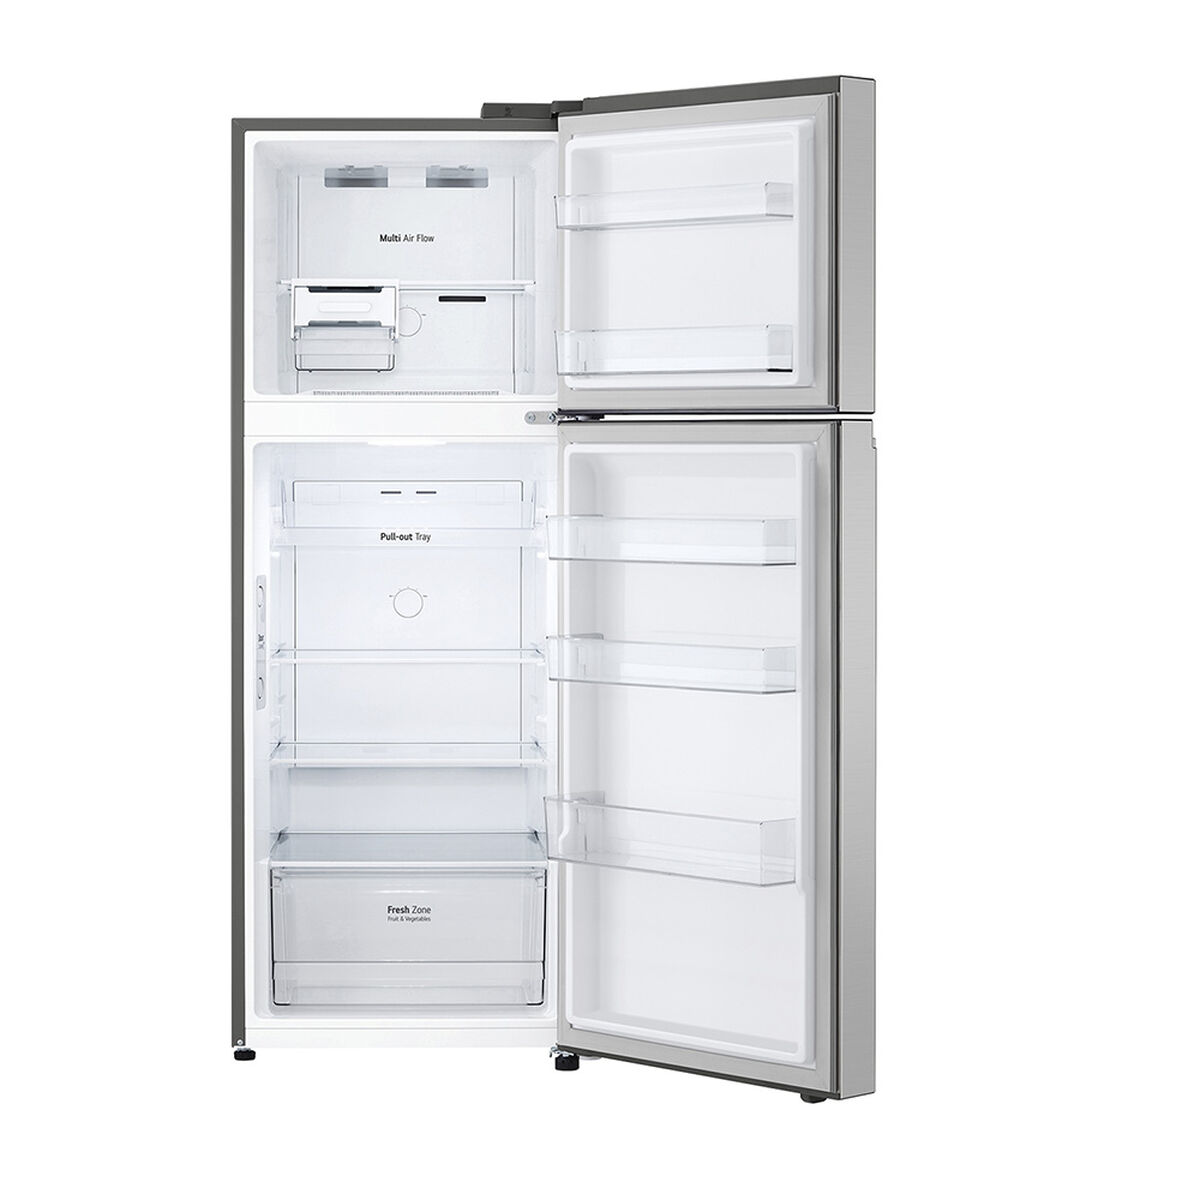 Refrigerador No Frost LG VT32BPP 315 lts.